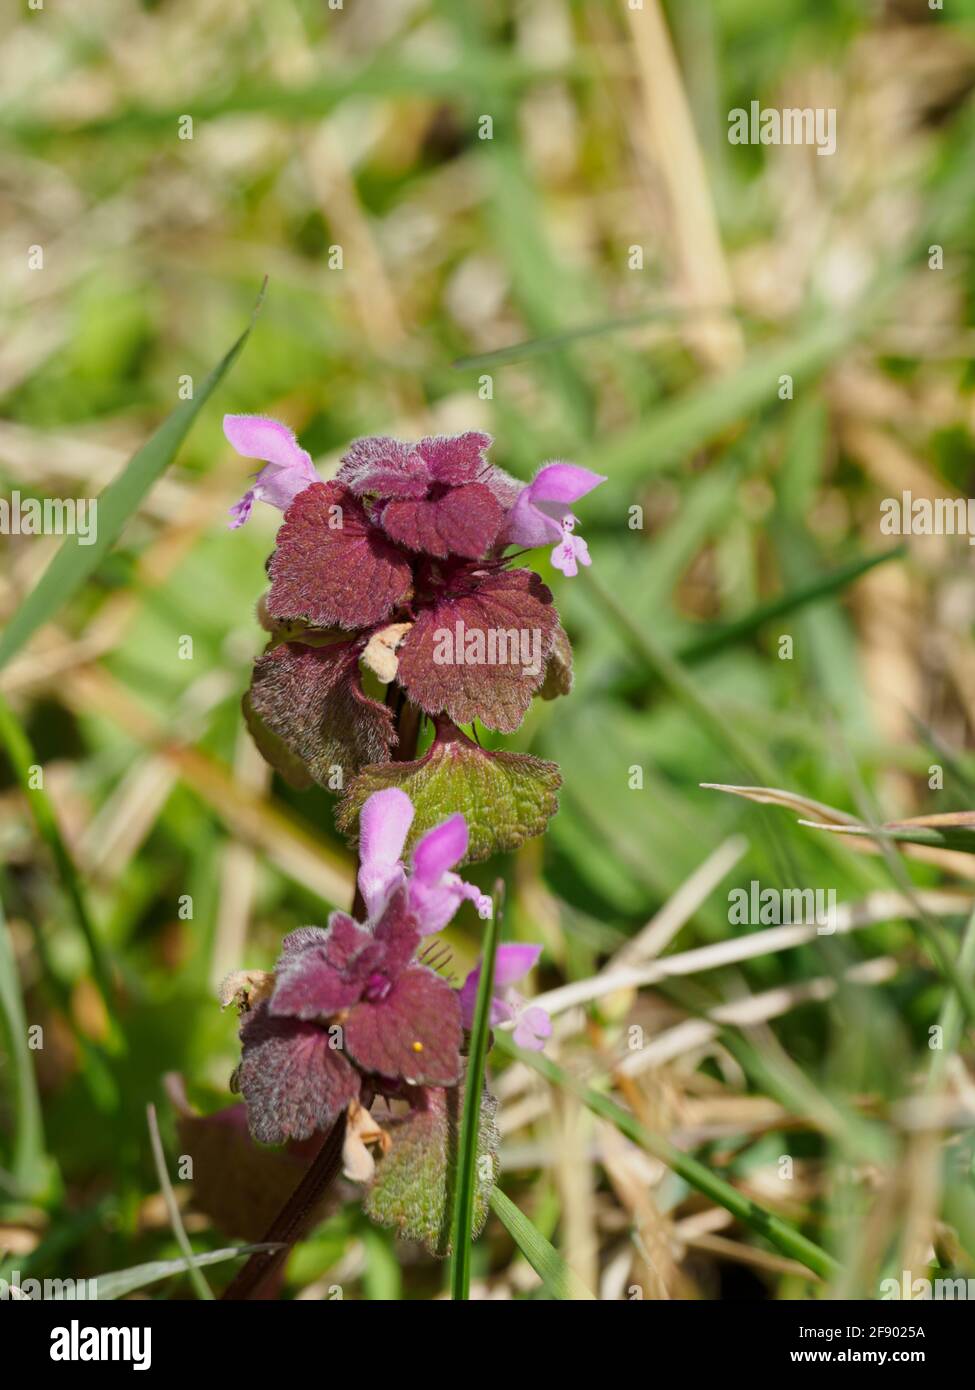 Lamium purpureum, known as red dead-nettle, purple dead-nettle, or purple archangel. Stock Photo